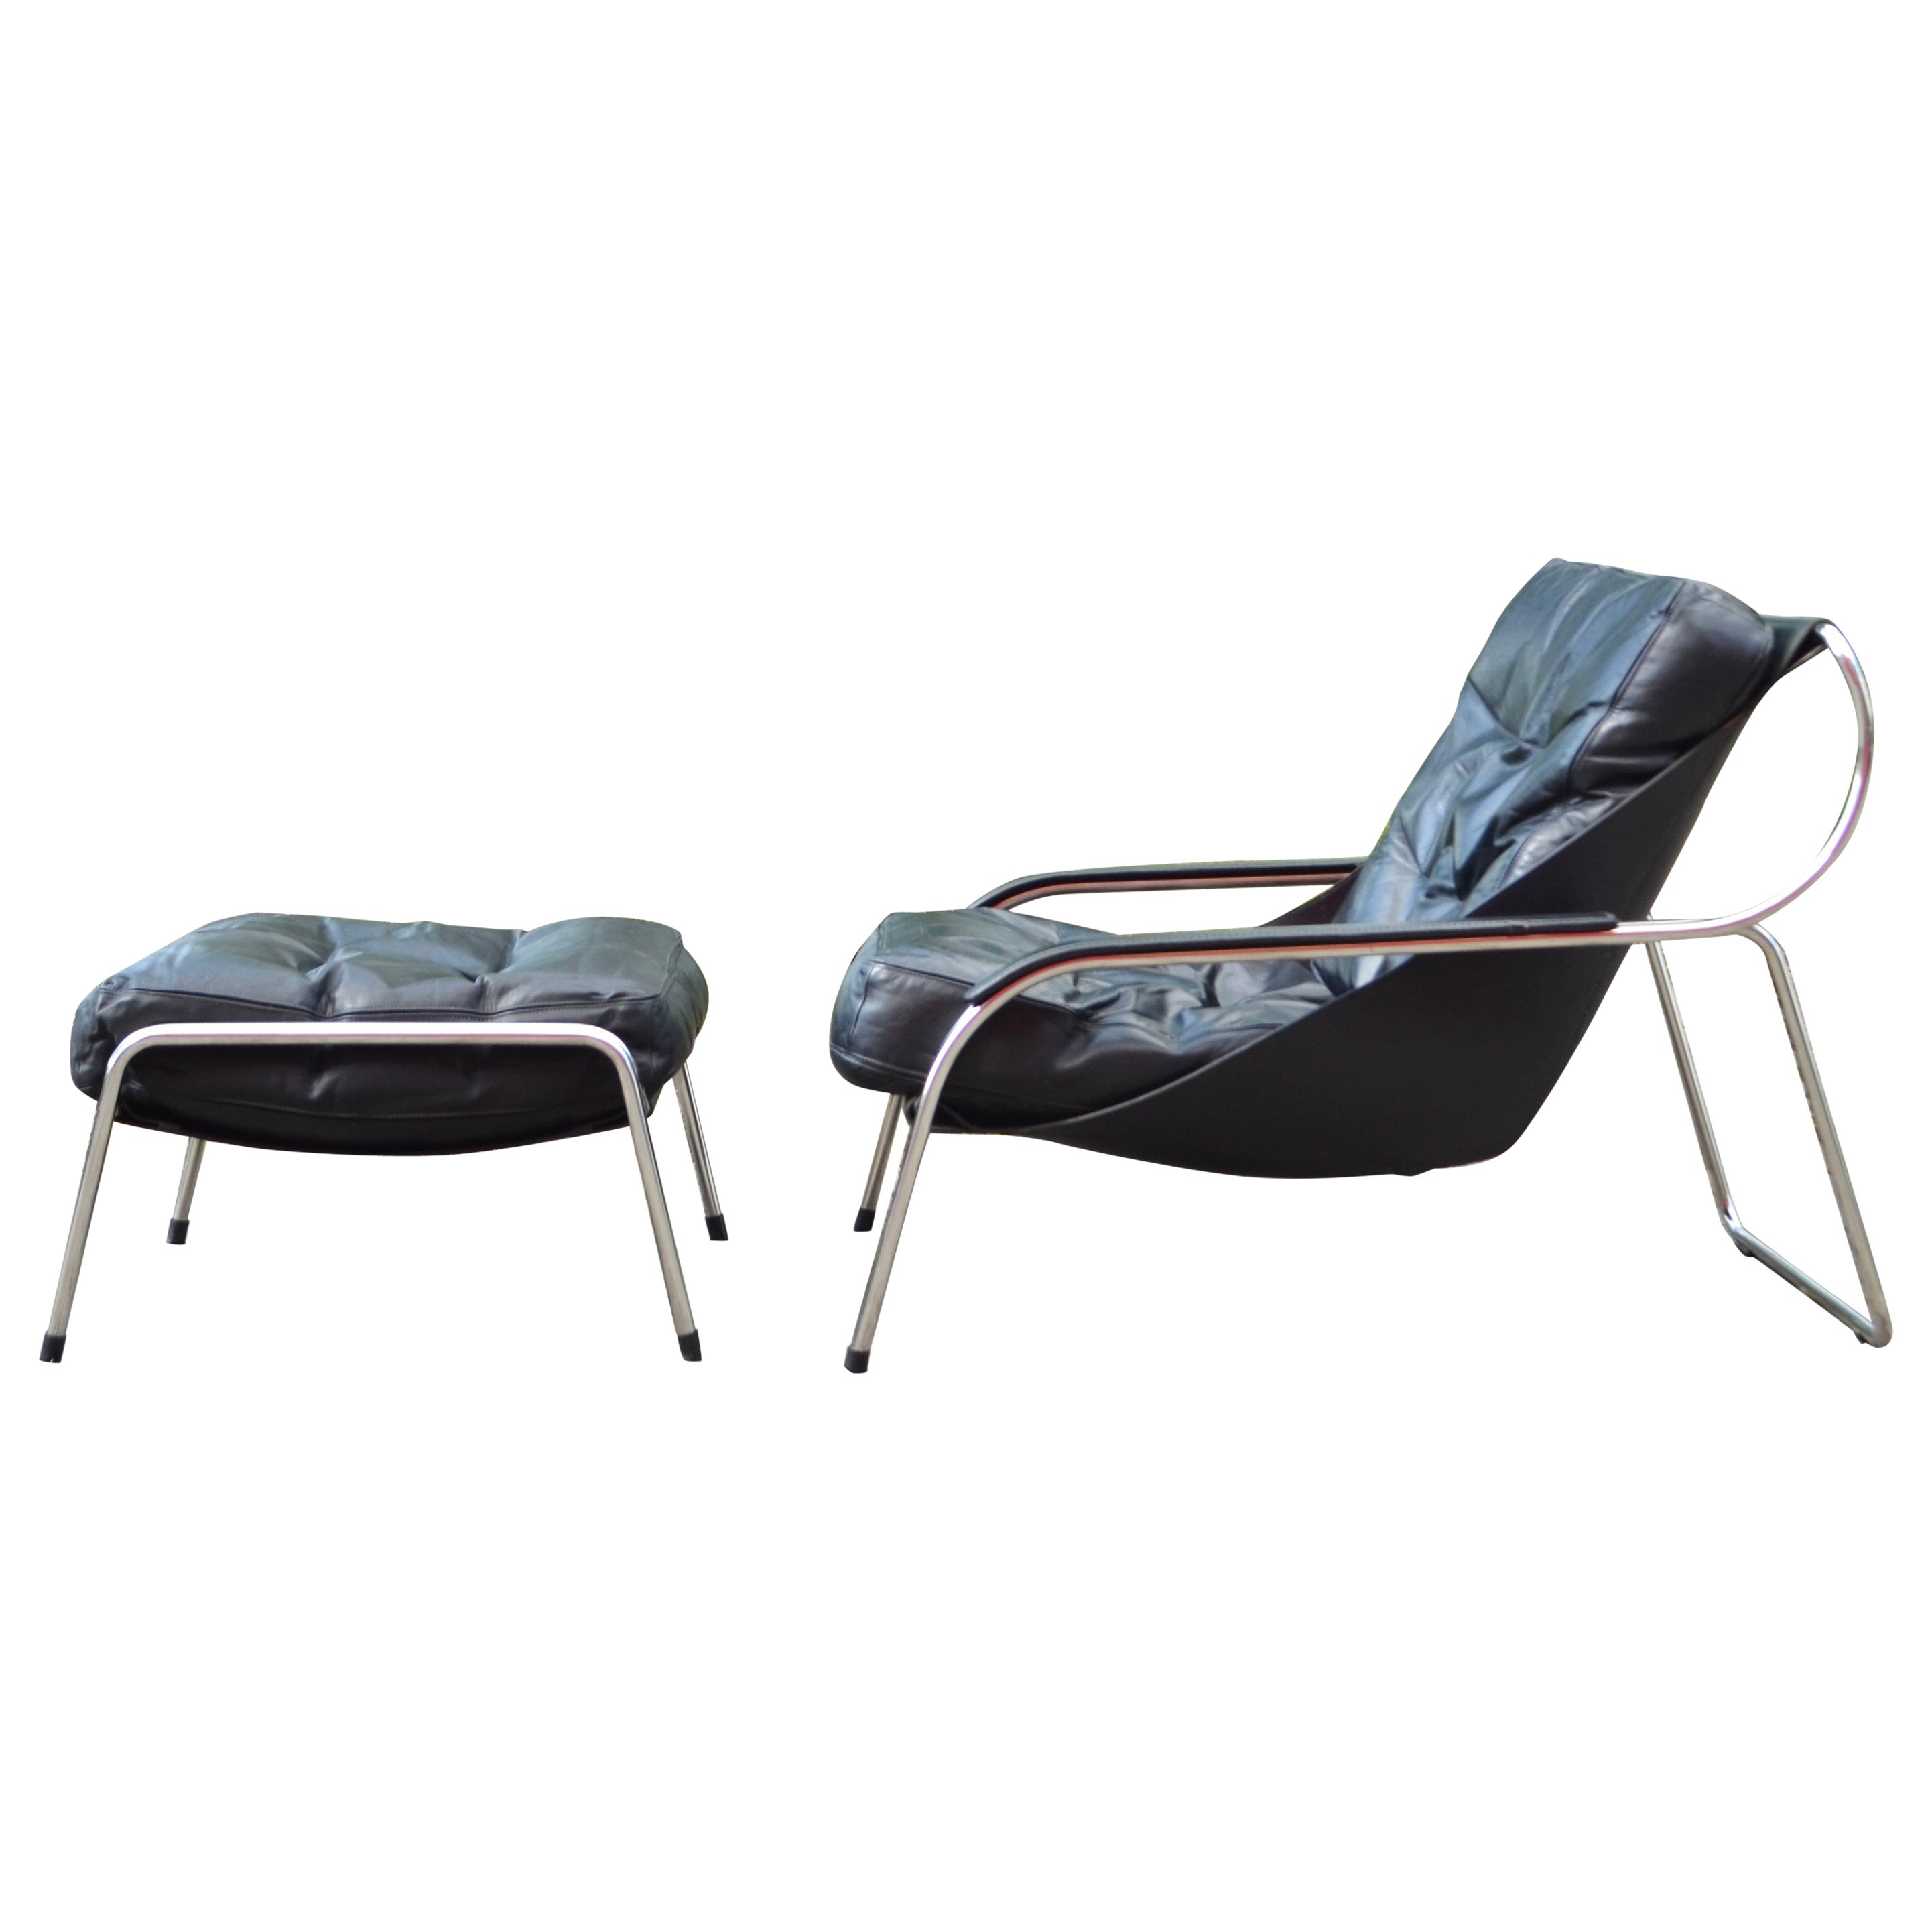 Zanotta Leather Lounge Chair Model Maggiolina Design 1947 by Marco Zanuso For Sale